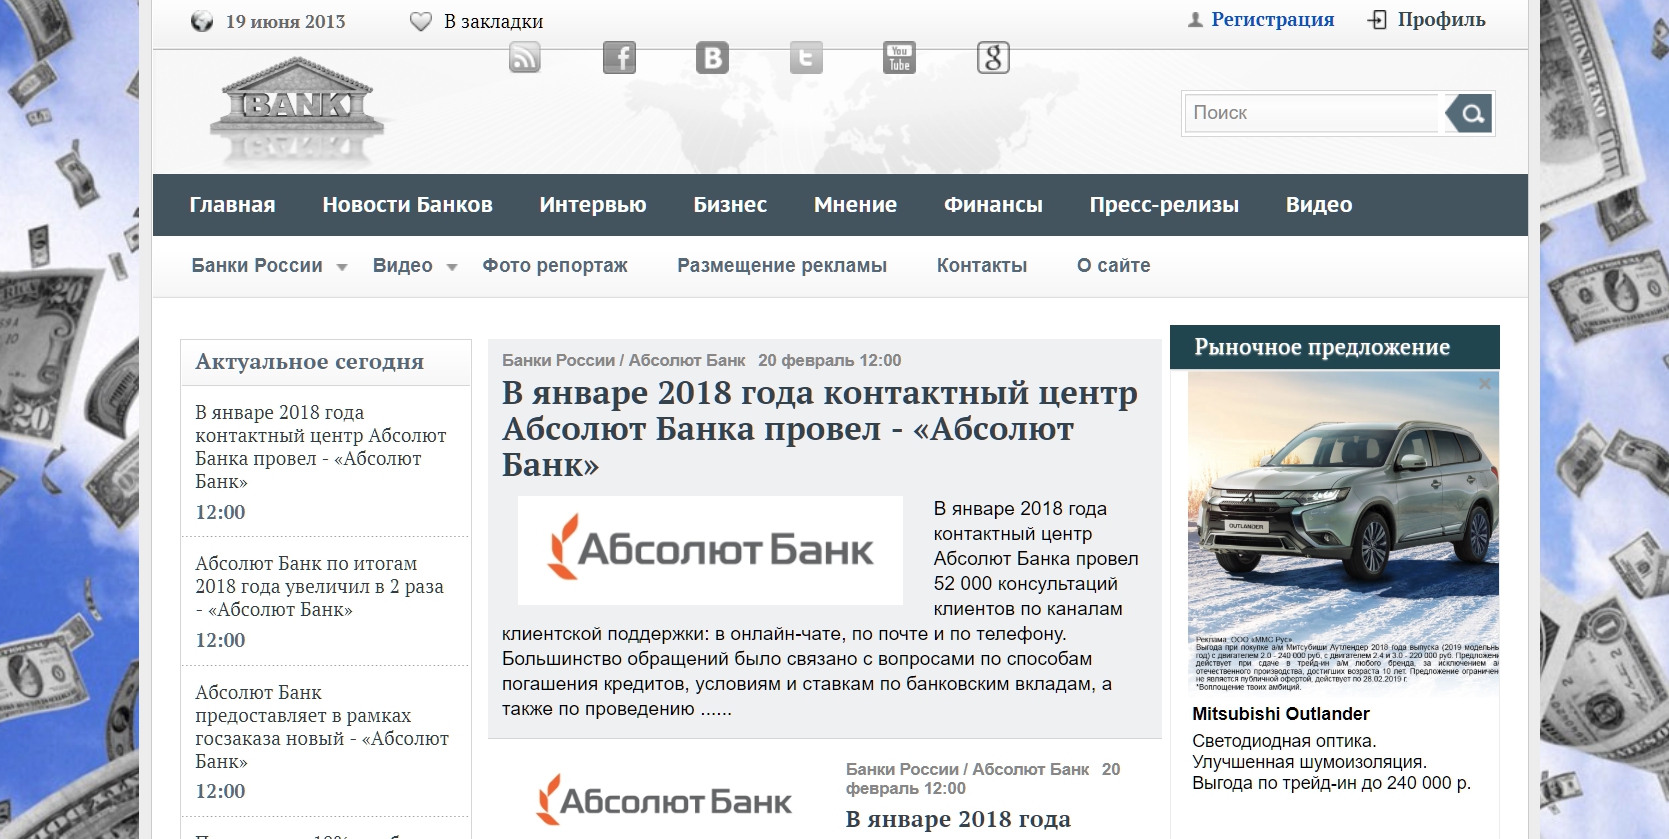 piv-bank.ru - Ќовости Ѕанков